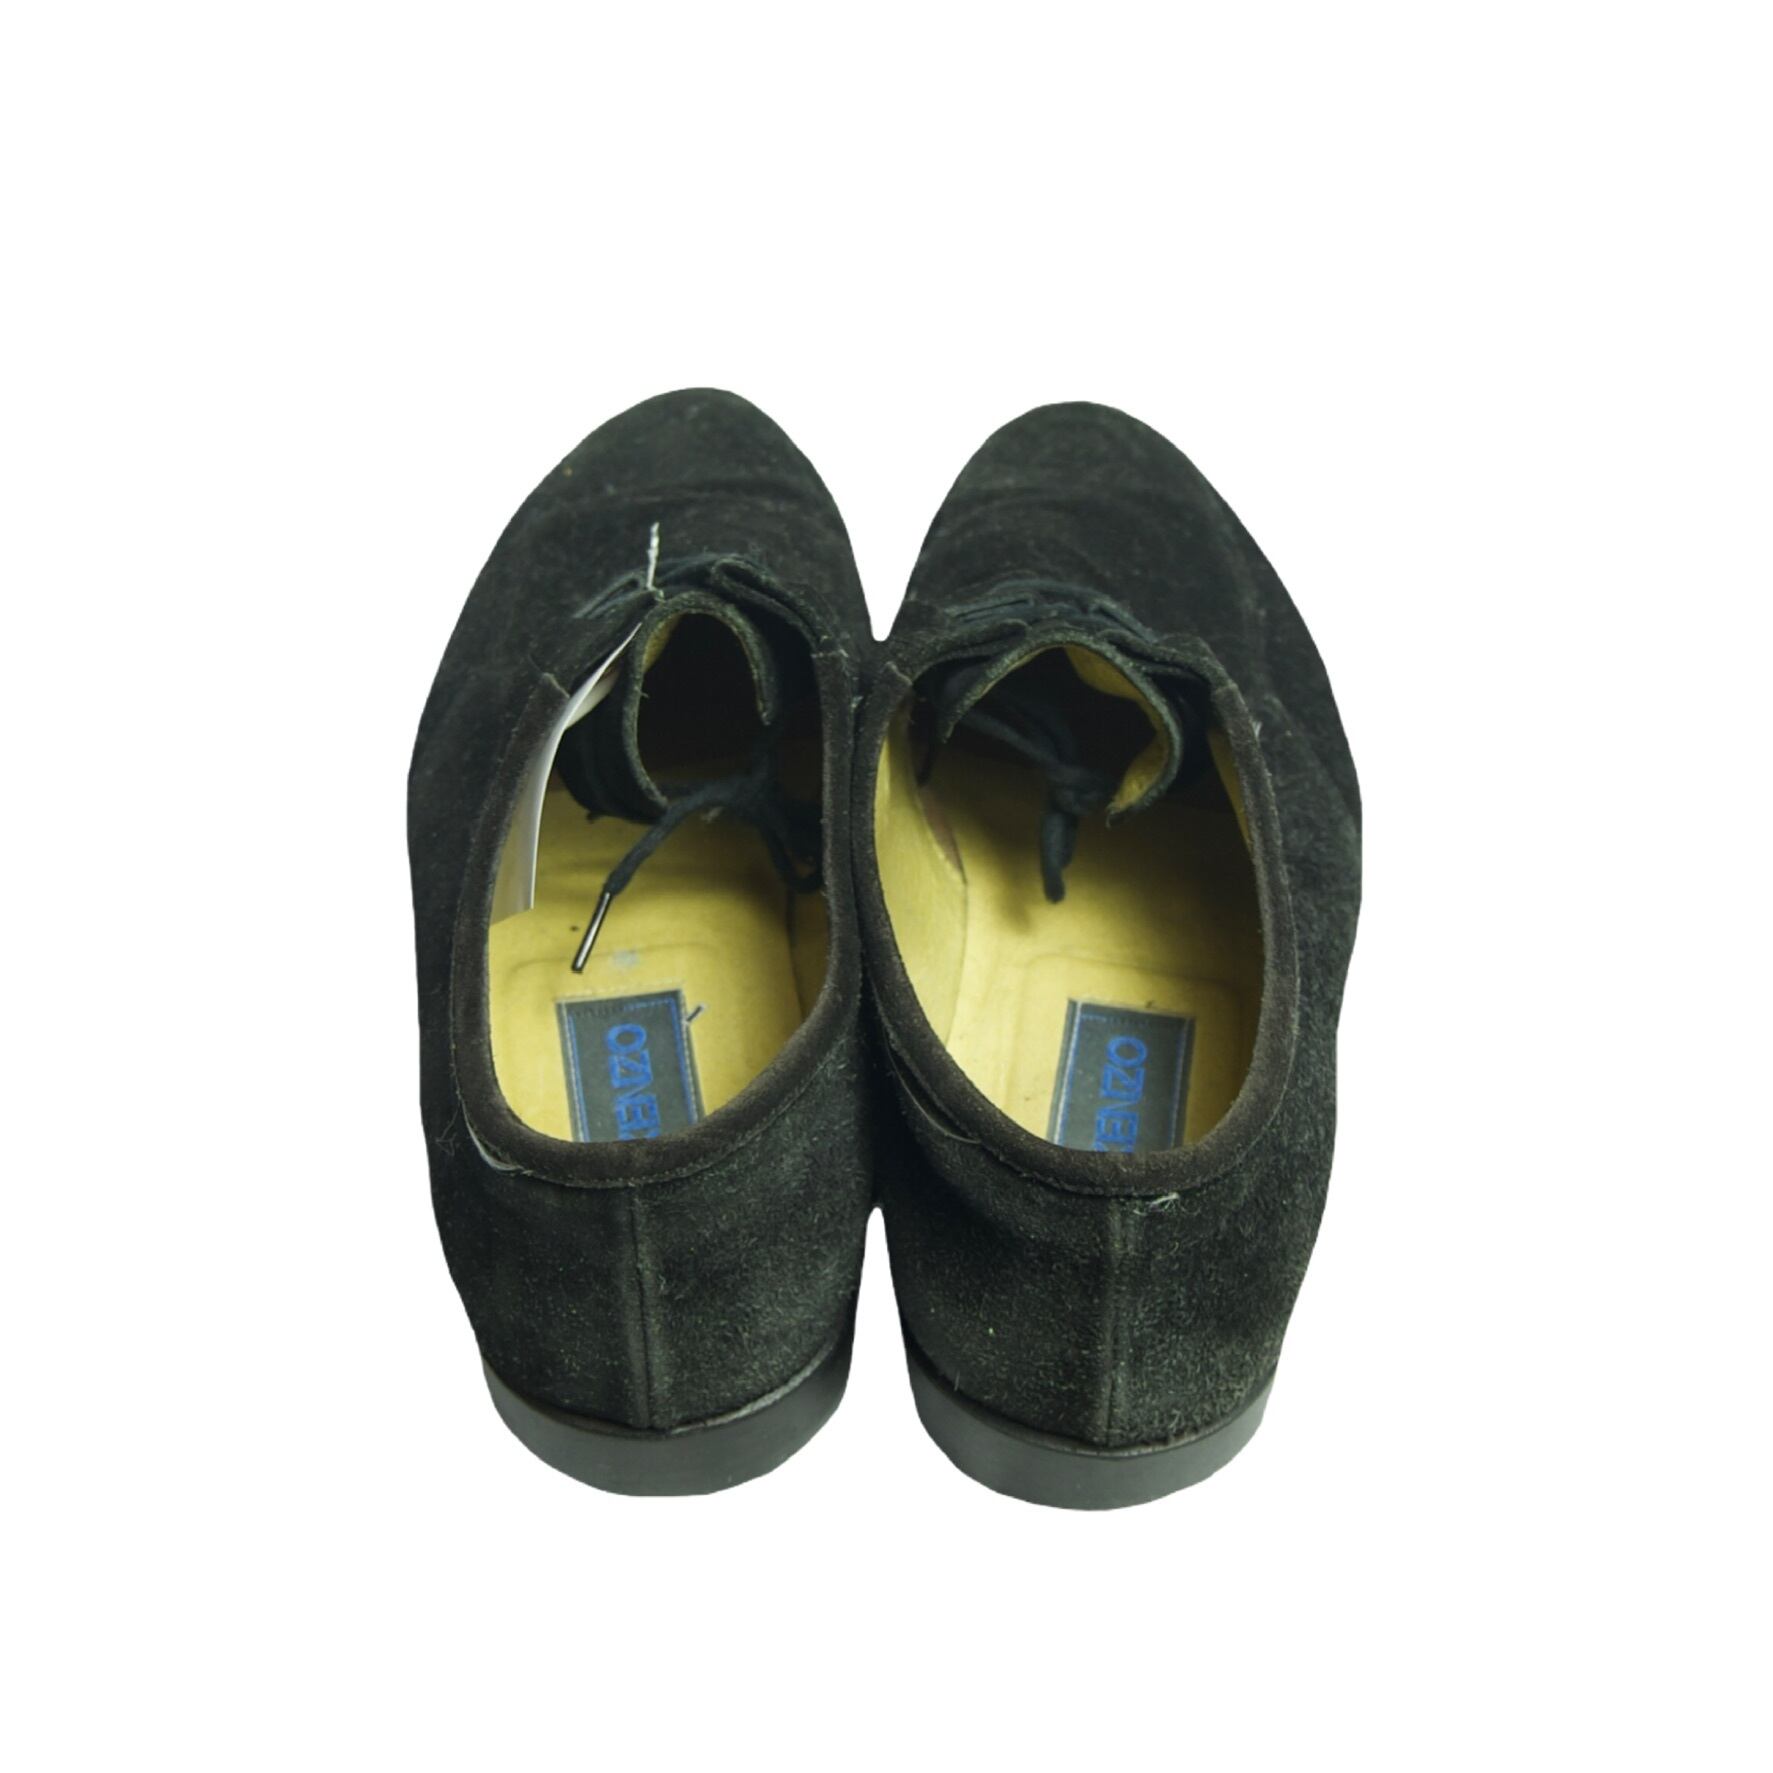 【kenzo】vintage used clothing dress shoes loafer suède black (smop000243)